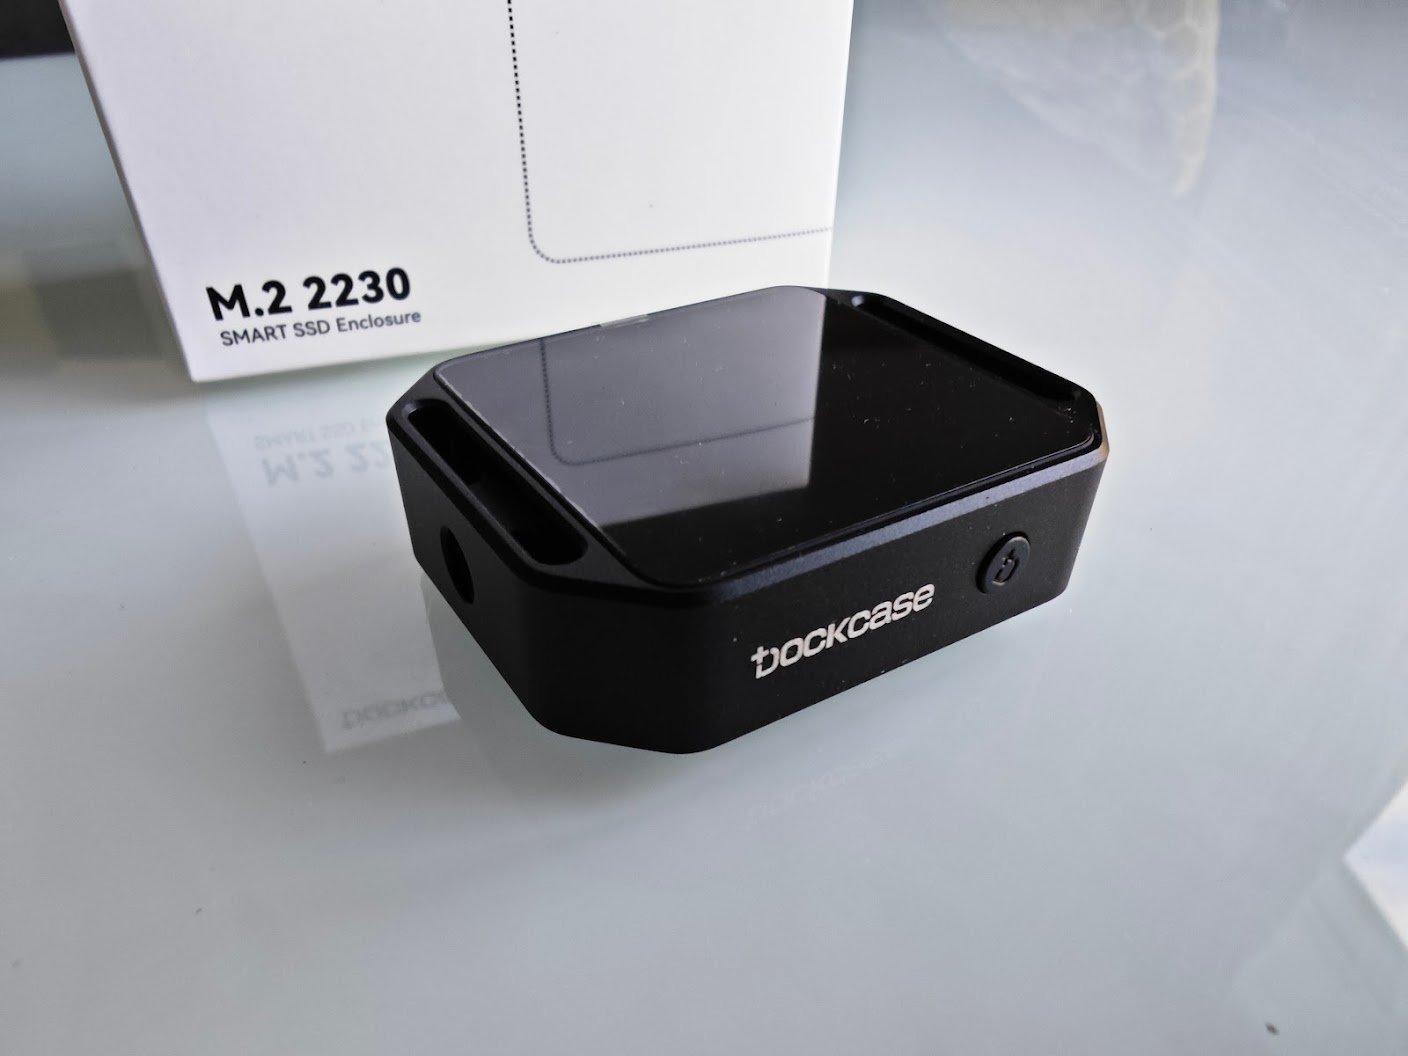 DockCase Pocket M.2 SSD enclosure hands-on